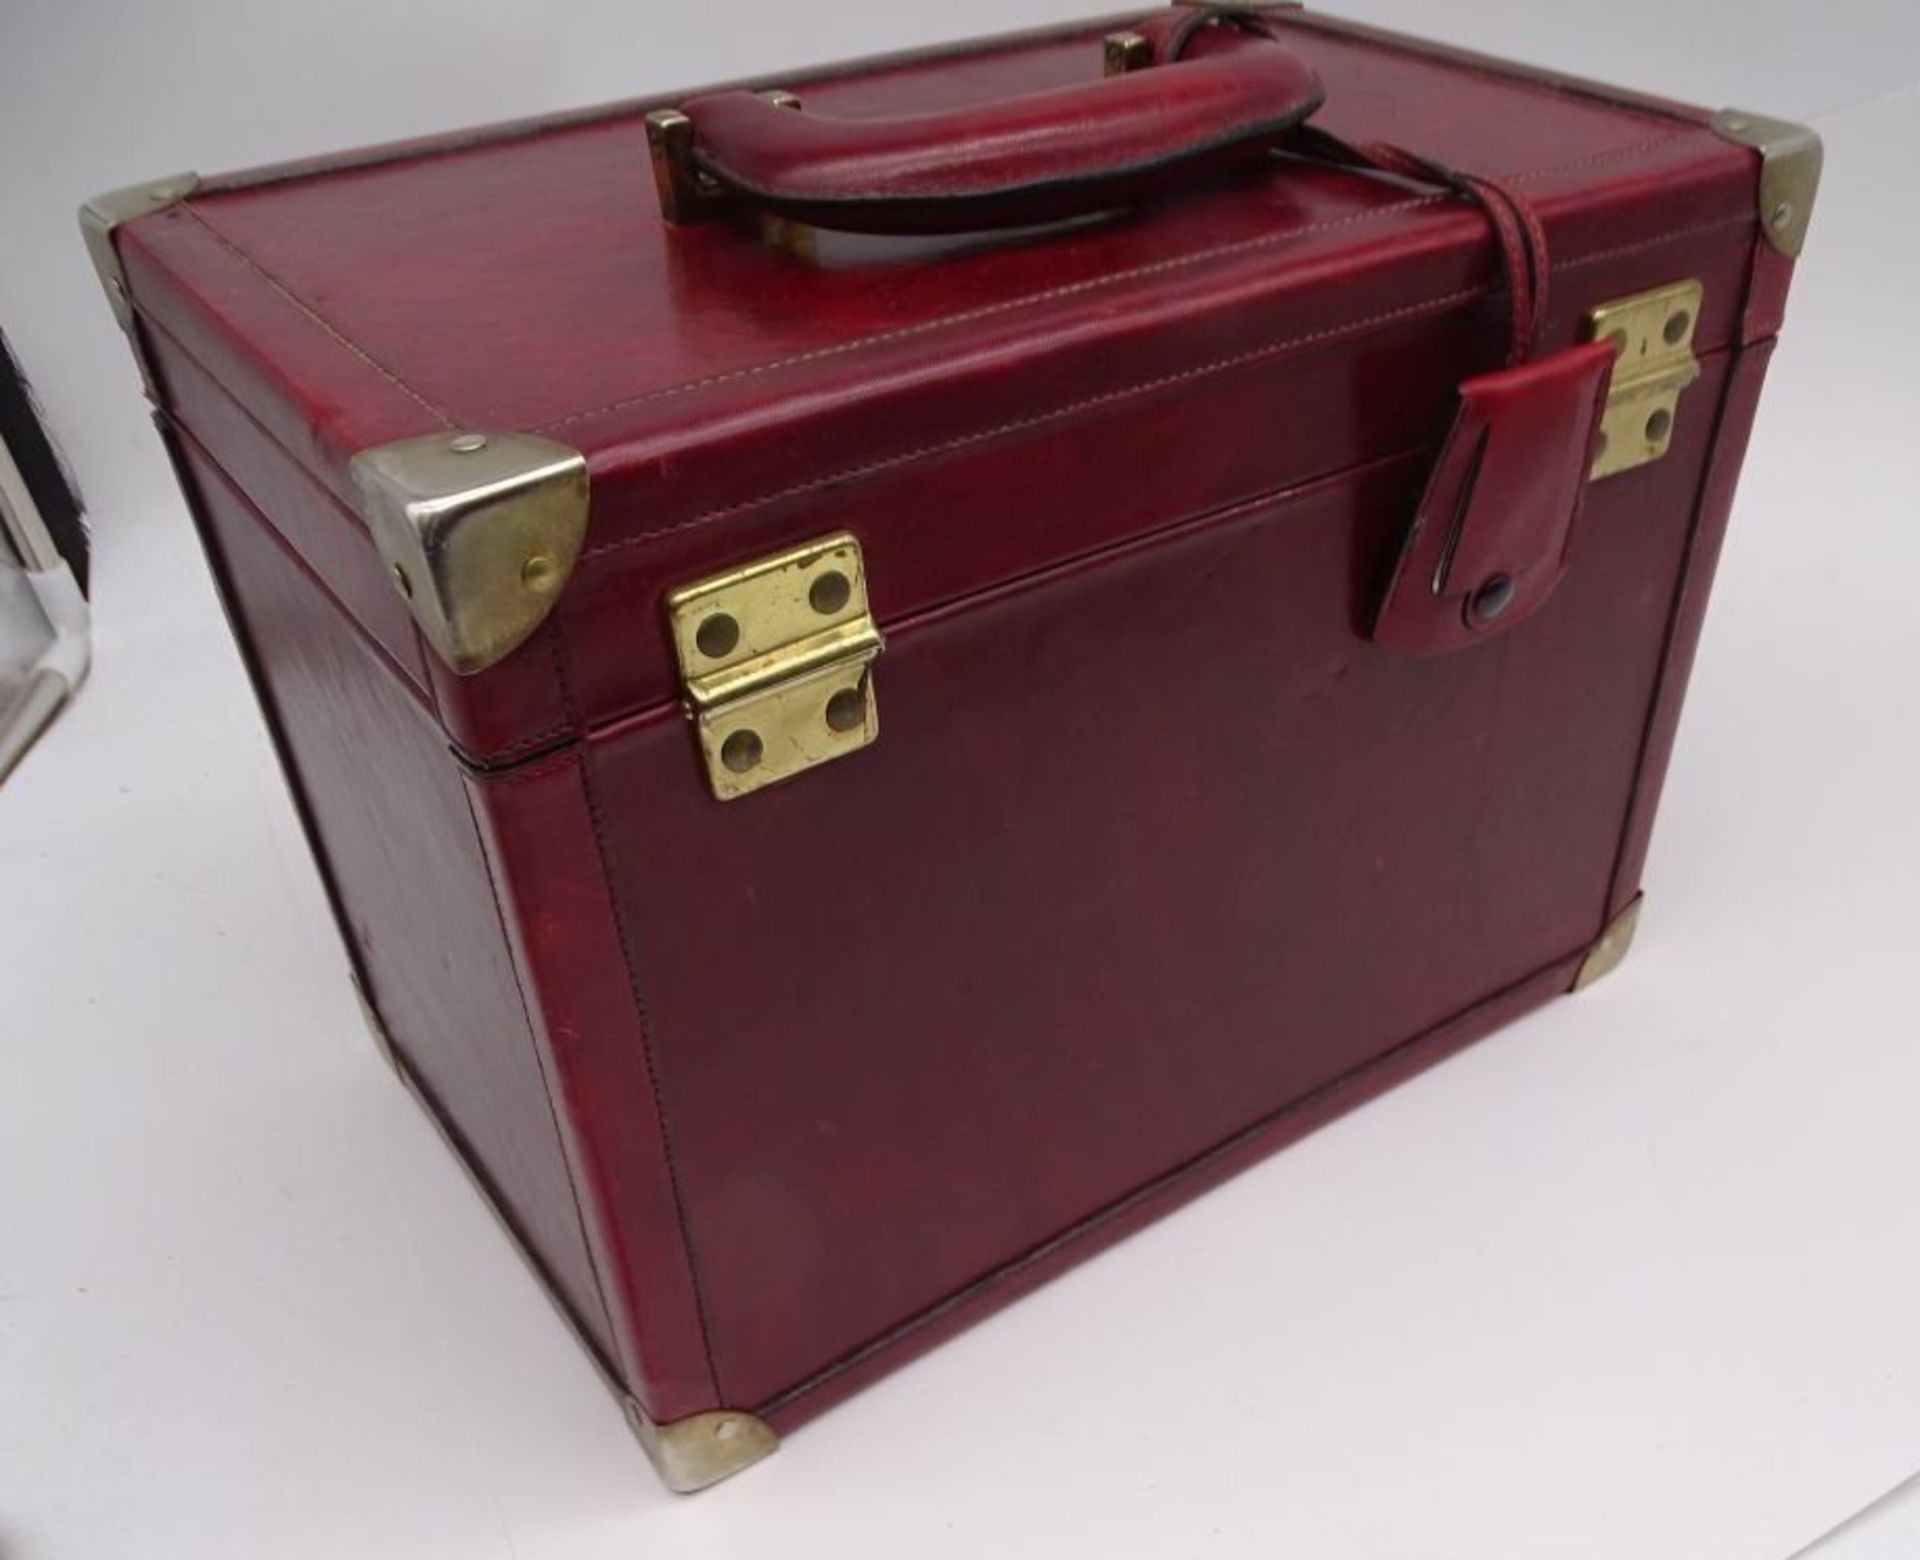 AIGNER Leder Kosmetikkoffer Schmuckkoffer absperrbar Leder rot, Beauty Case, guter Zustand, H-24 cm - Bild 7 aus 7